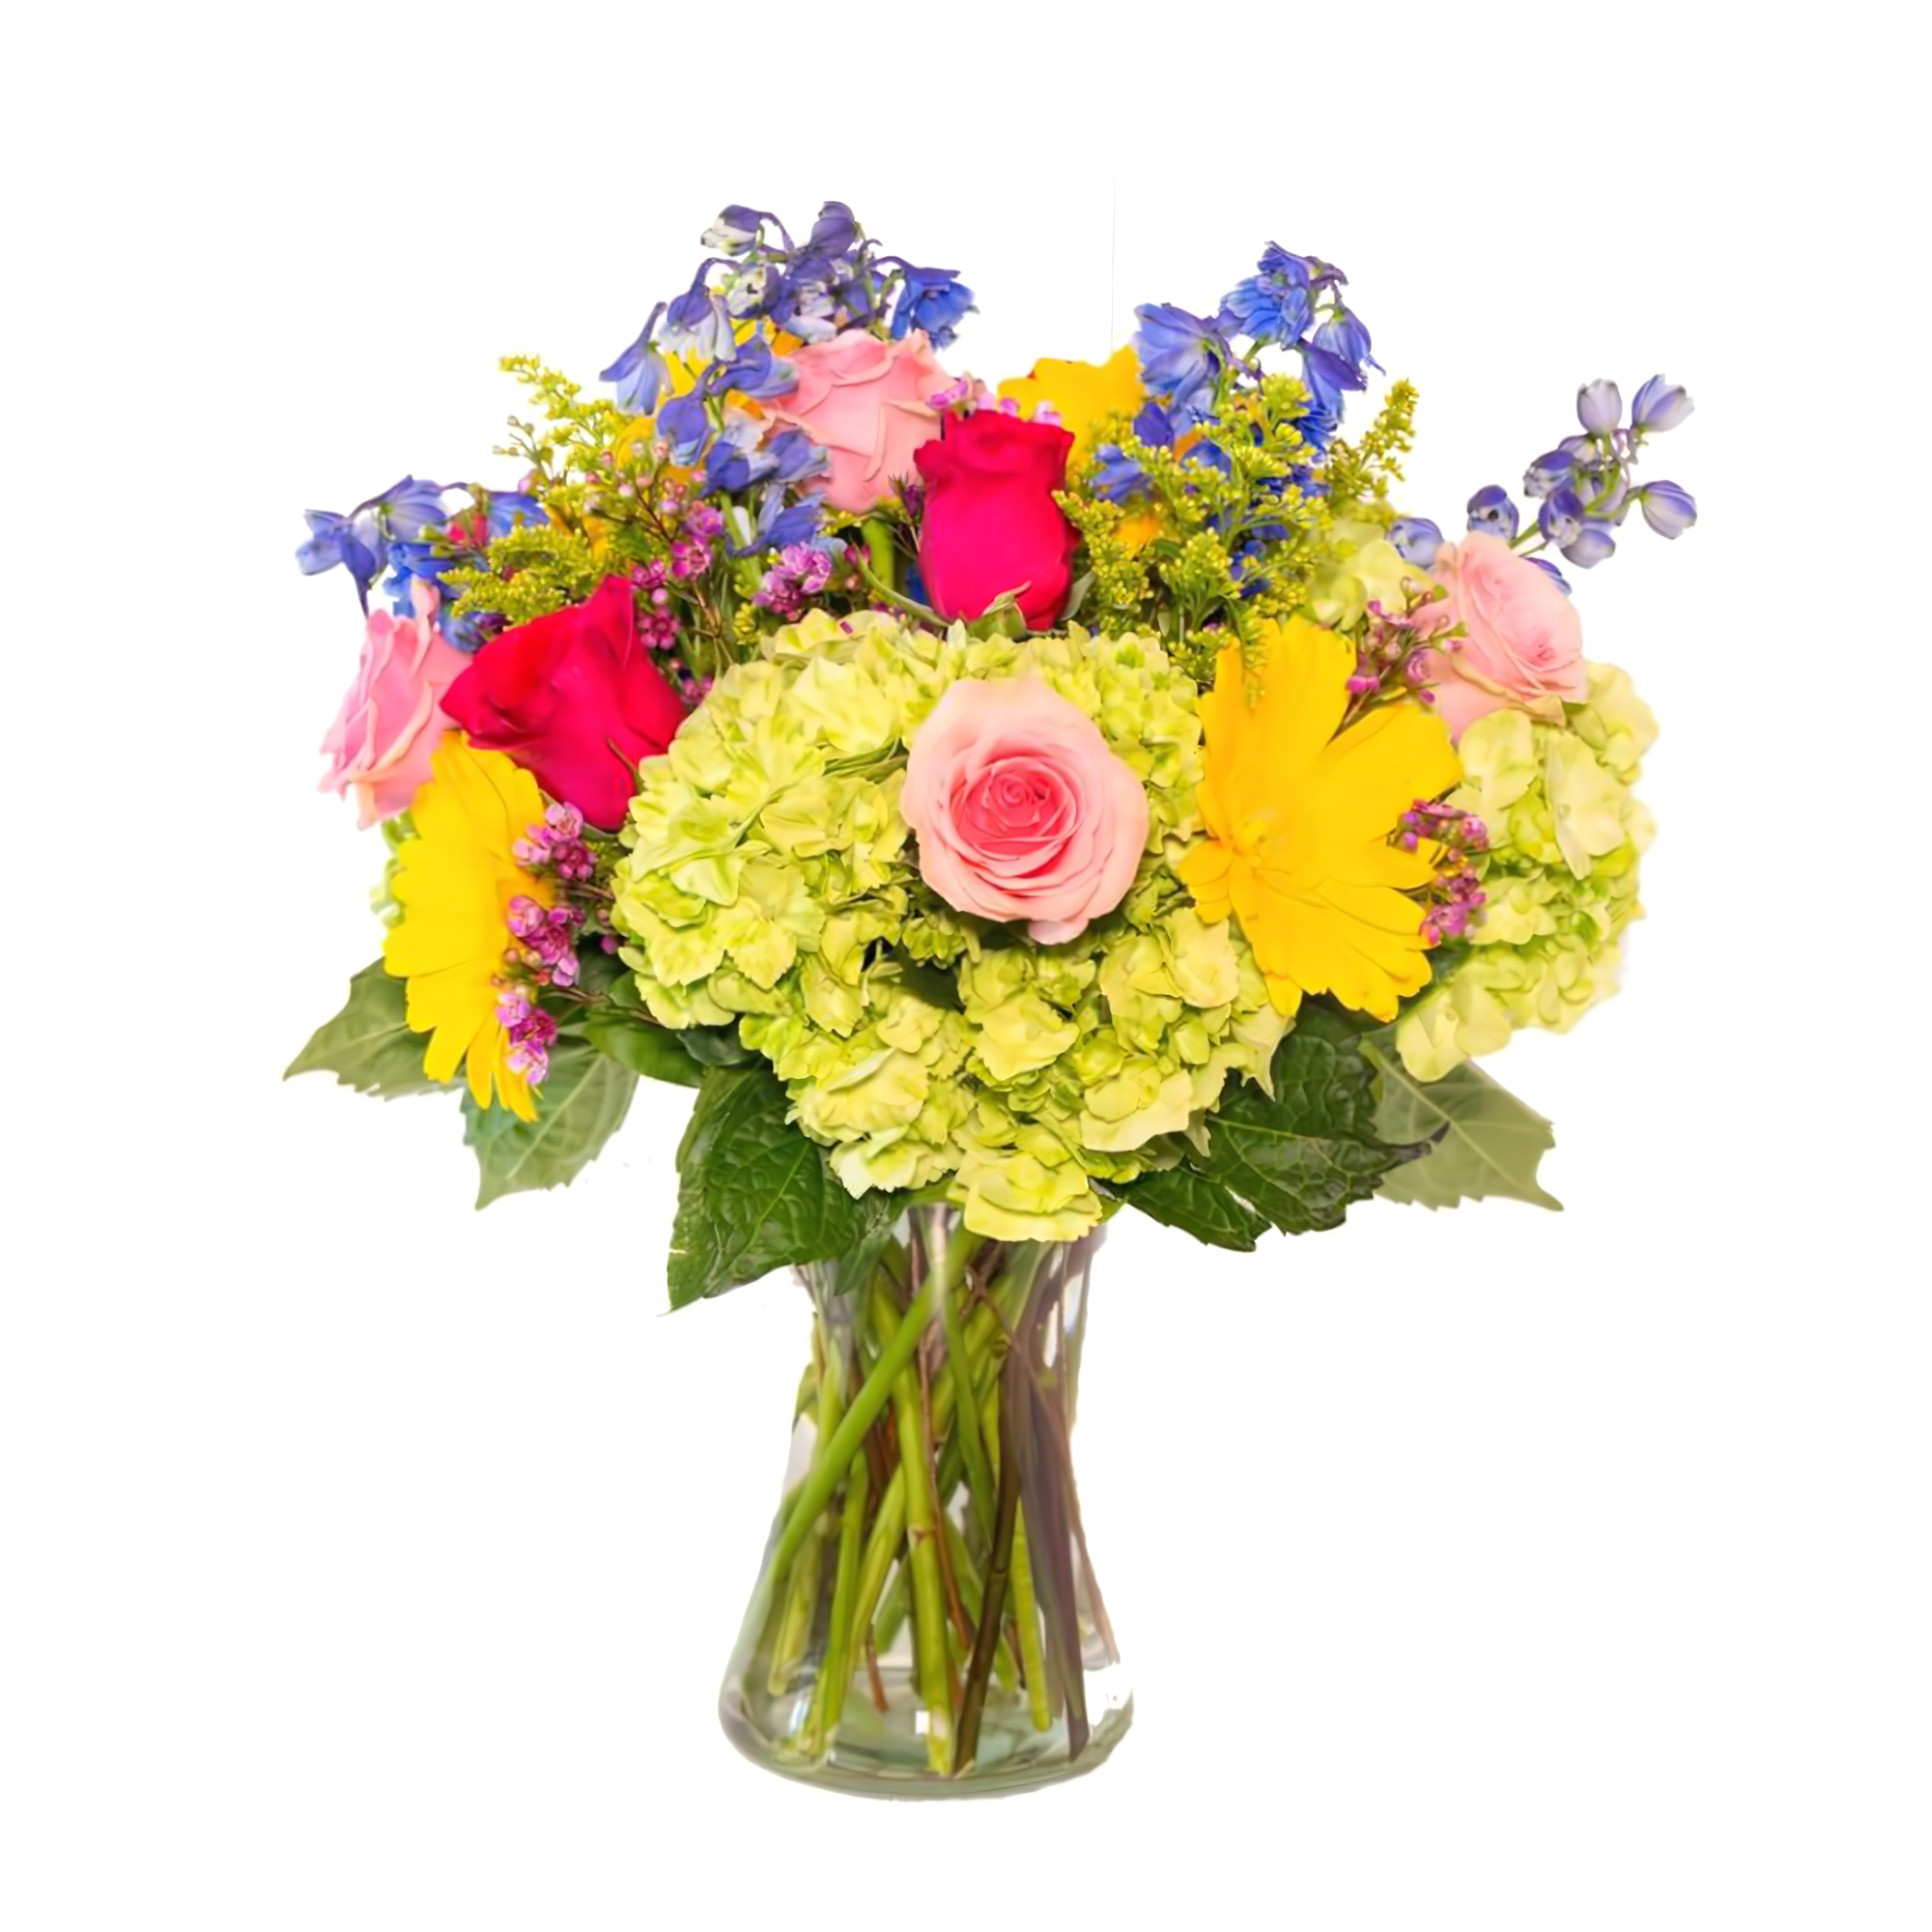 Manhattan Flower Delivery - French Country Garden Bouquet - Birthdays